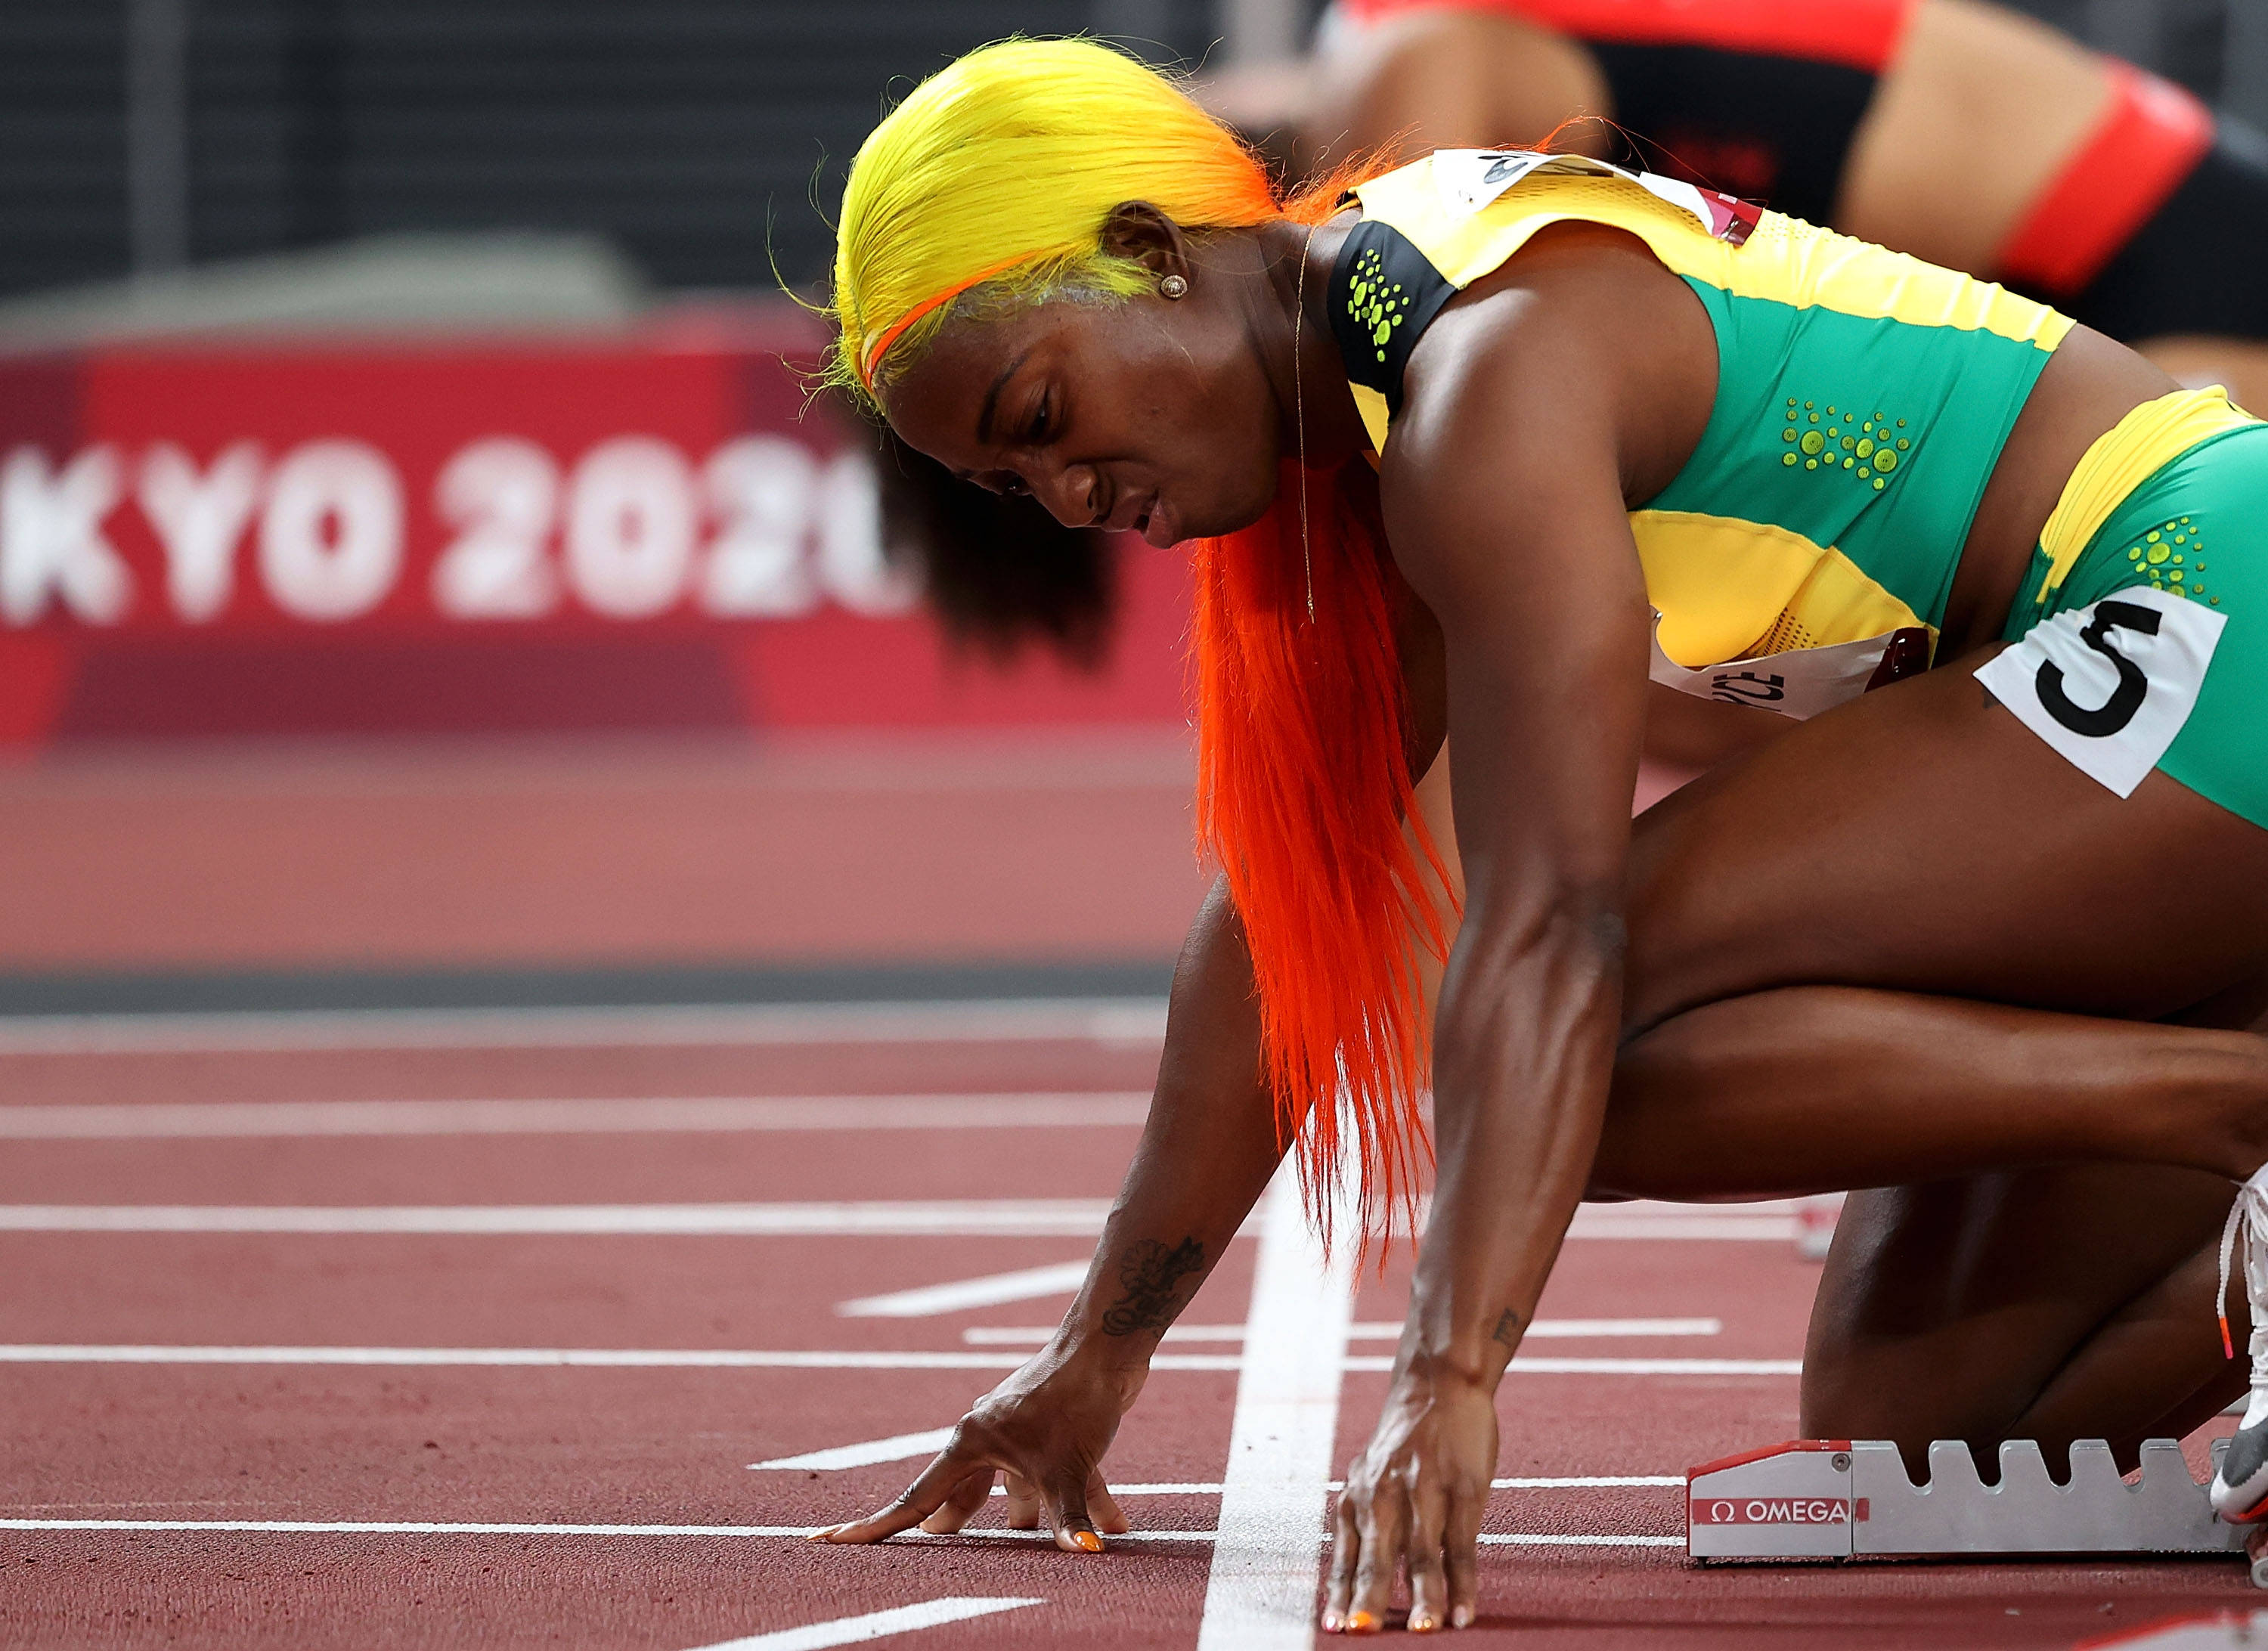 7月31日,牙买加选手弗雷泽·普莱斯在女子100米决赛中.